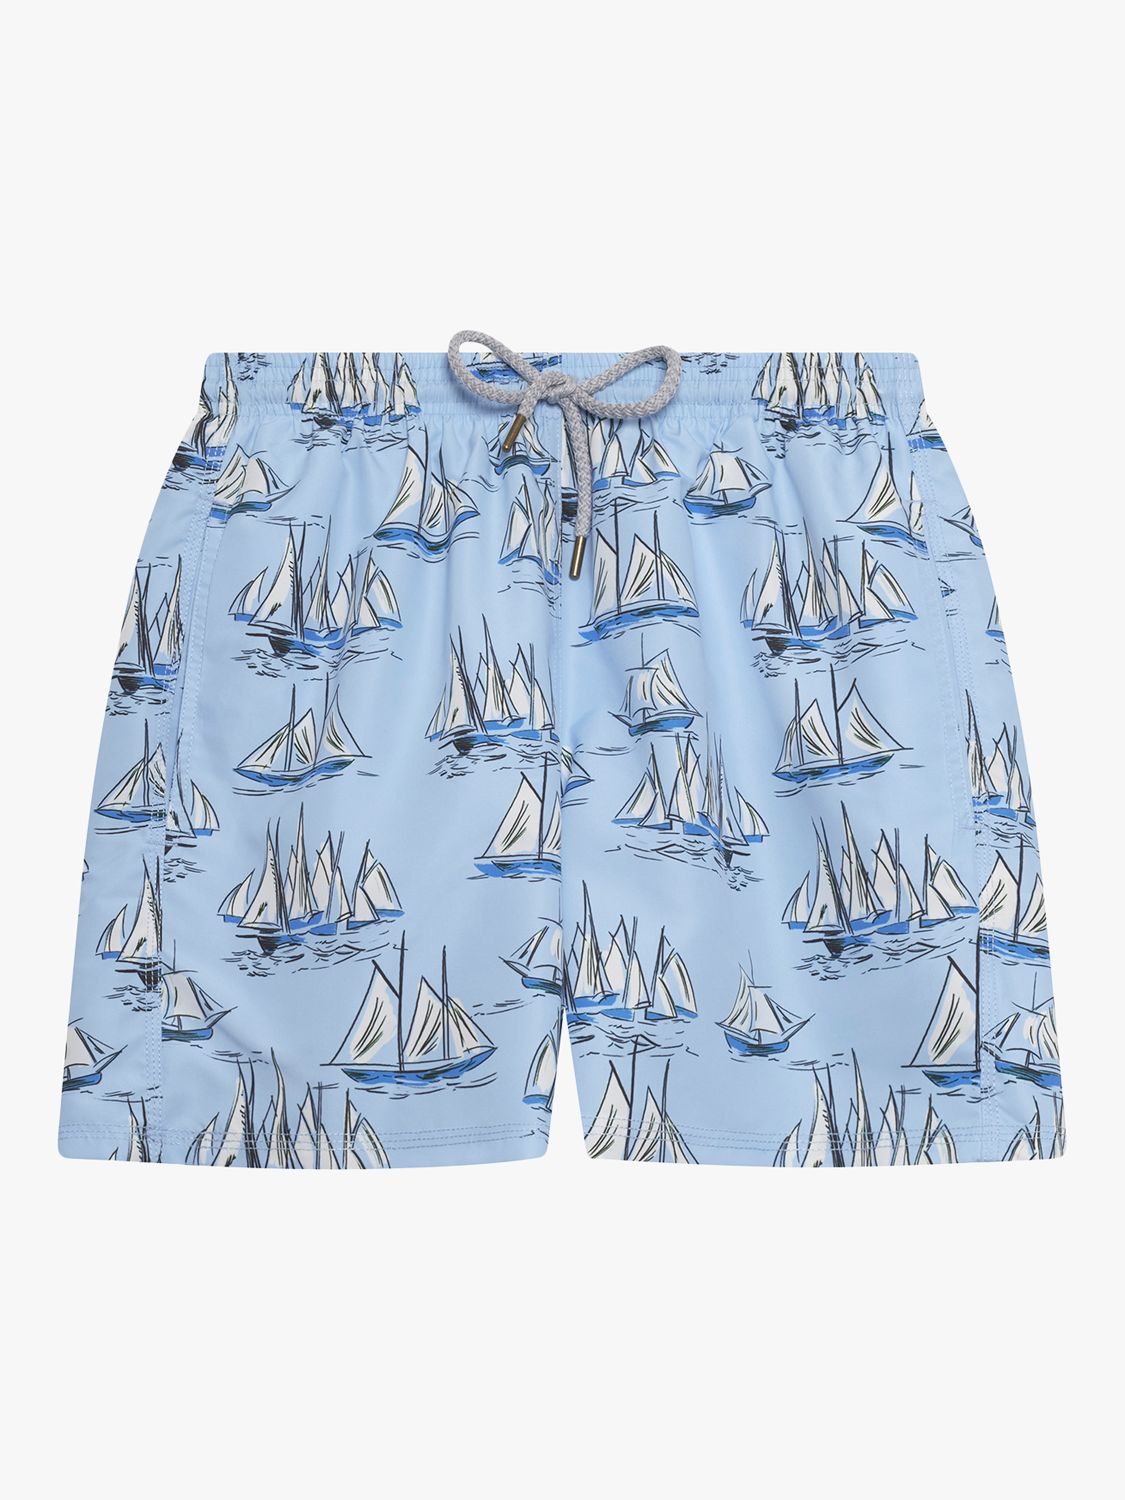 Trotters Sailboat Swim Shorts, Blue/White, S